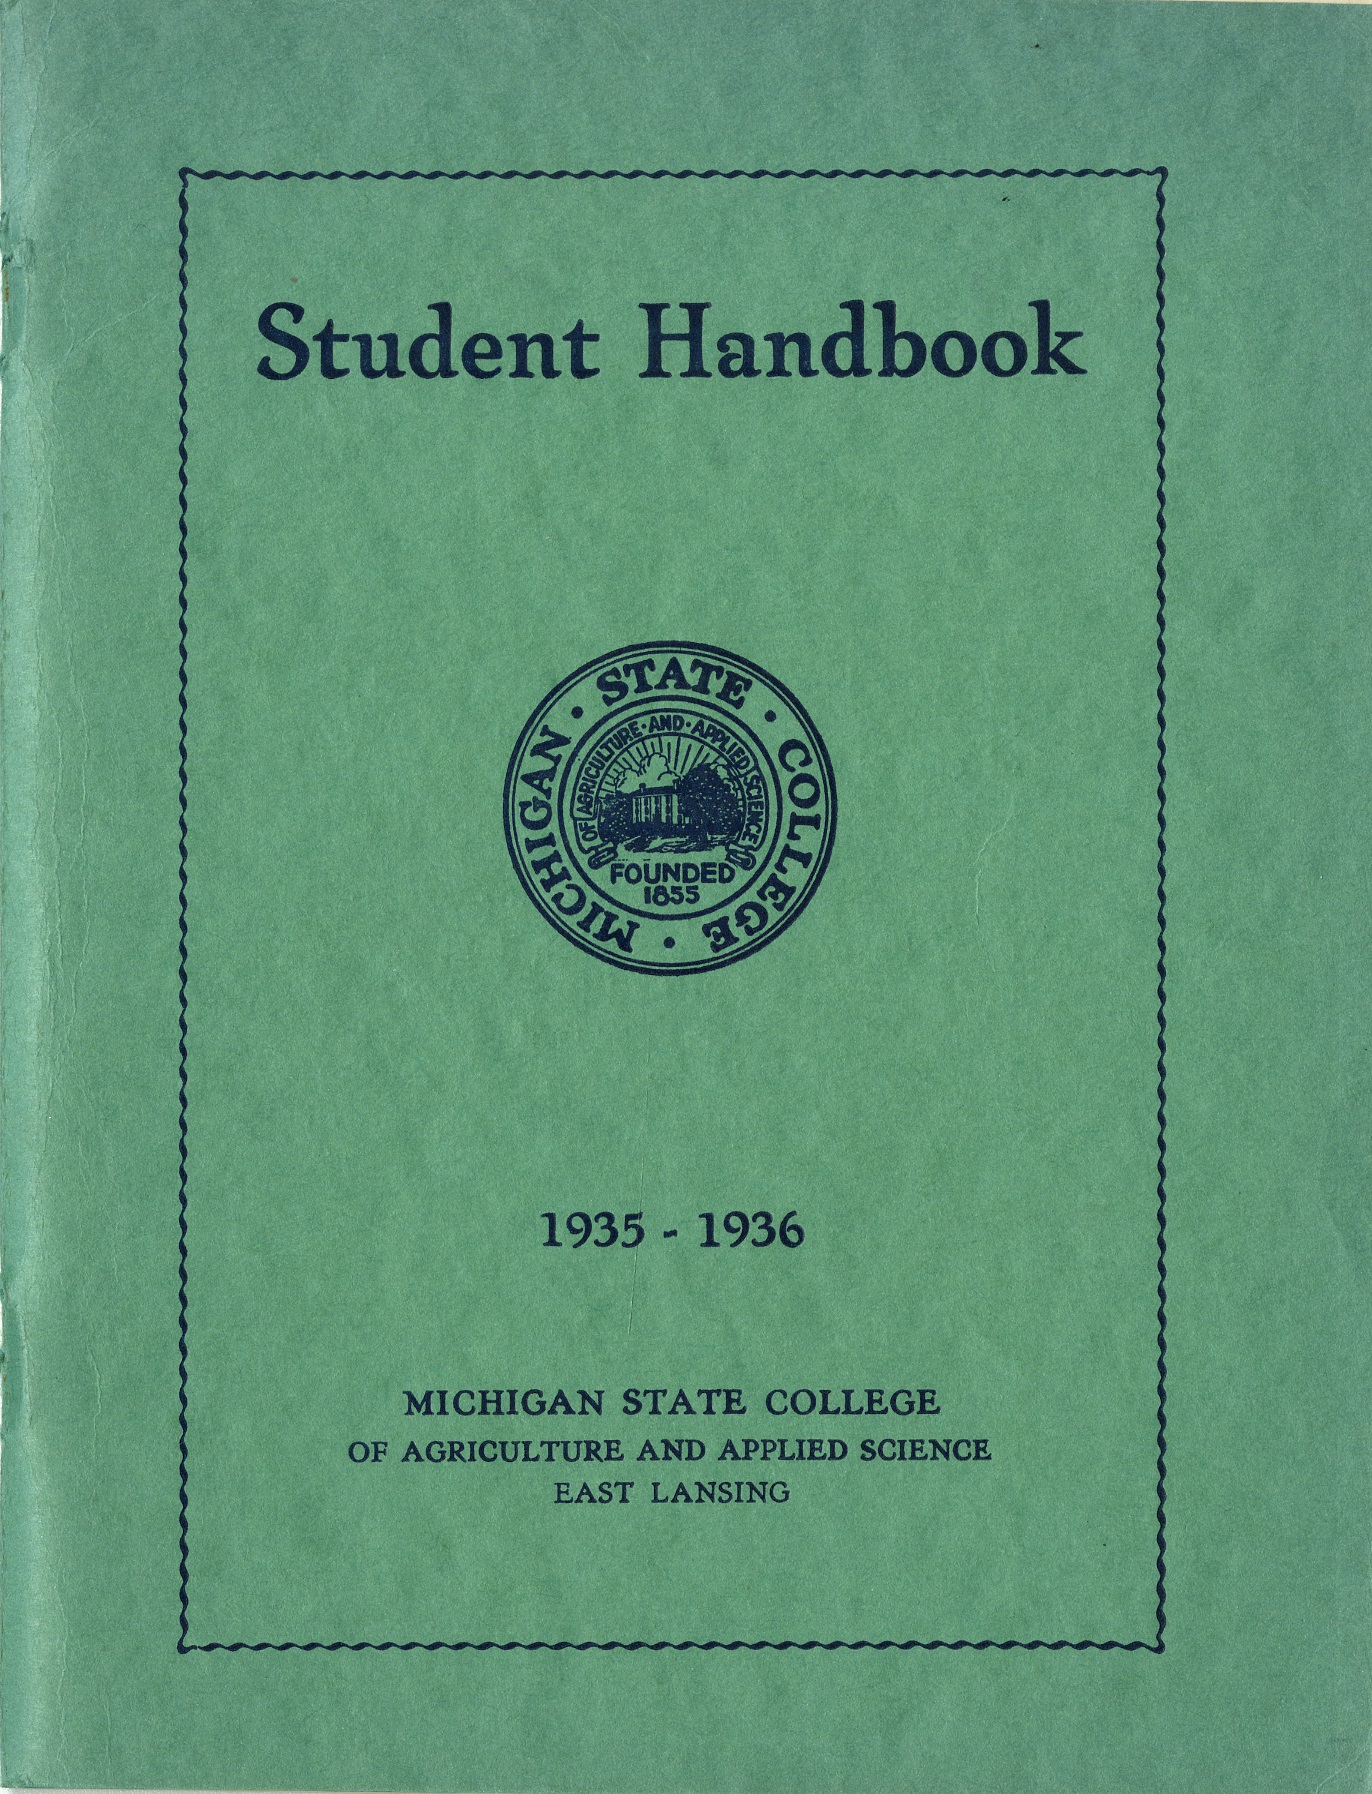 Student Handbook, 1935-1936